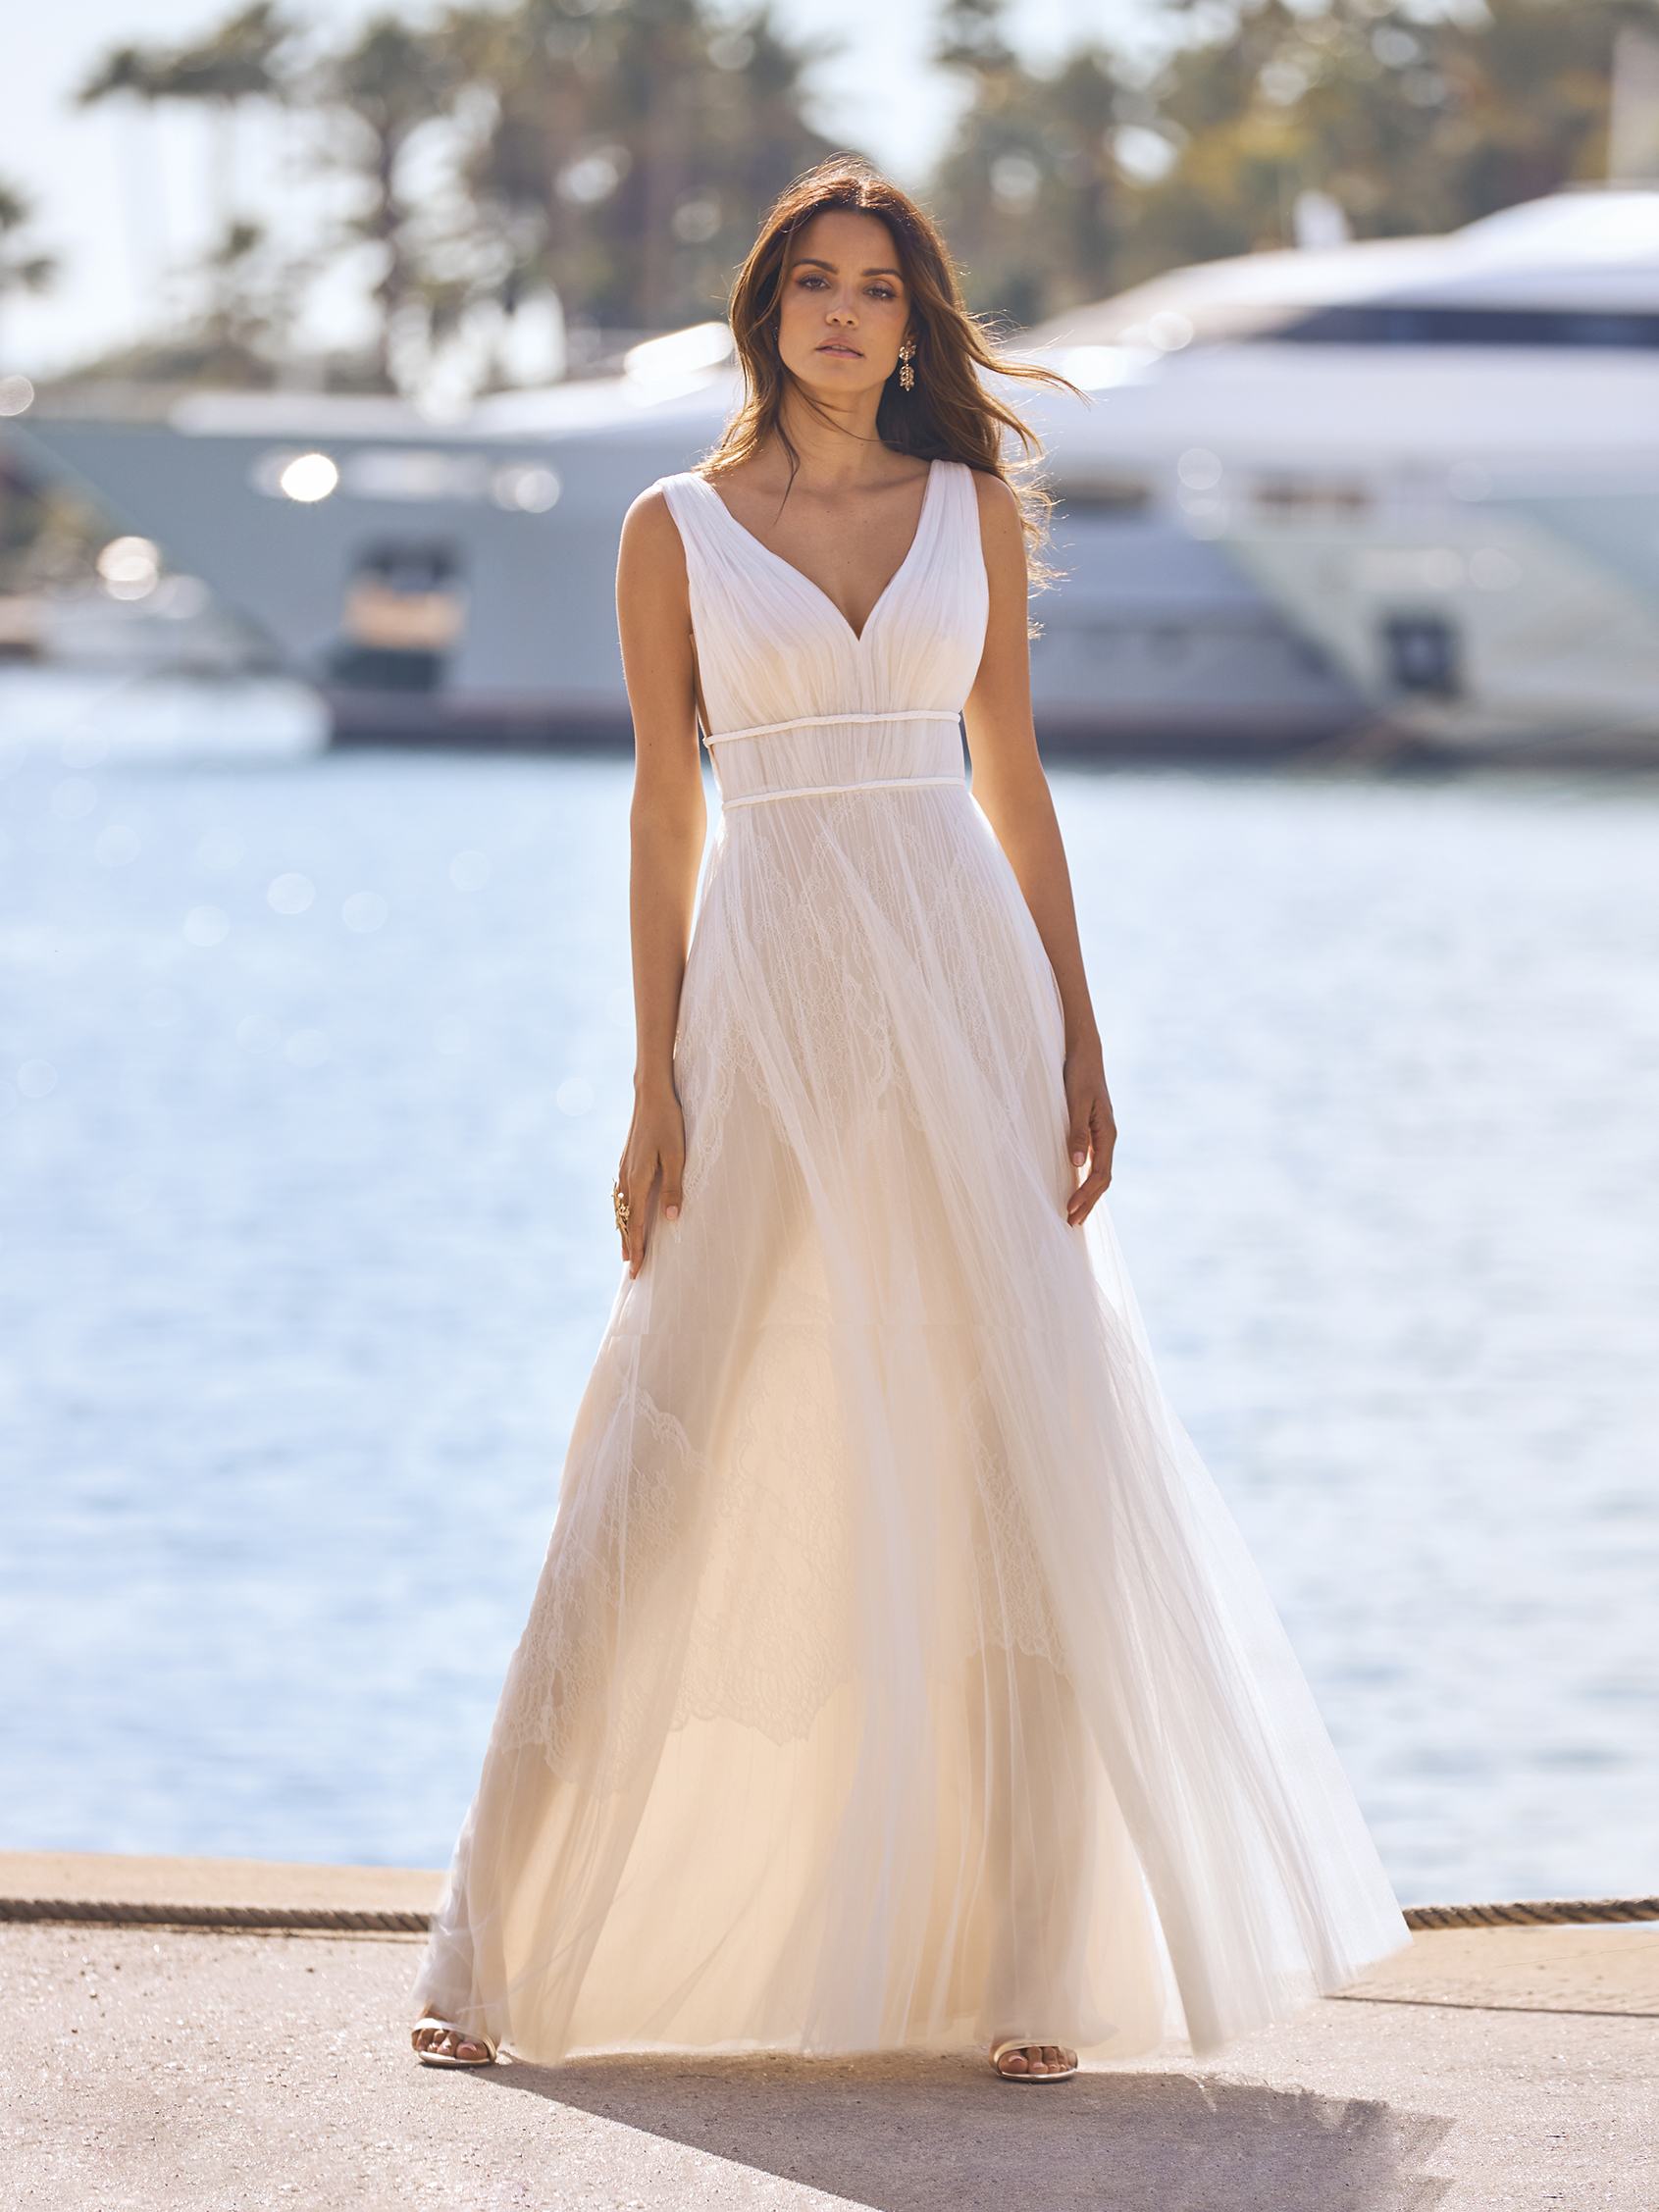 The Best Beach Wedding Dresses  Kısa gelinlik, Düğün modası, Gelinlik